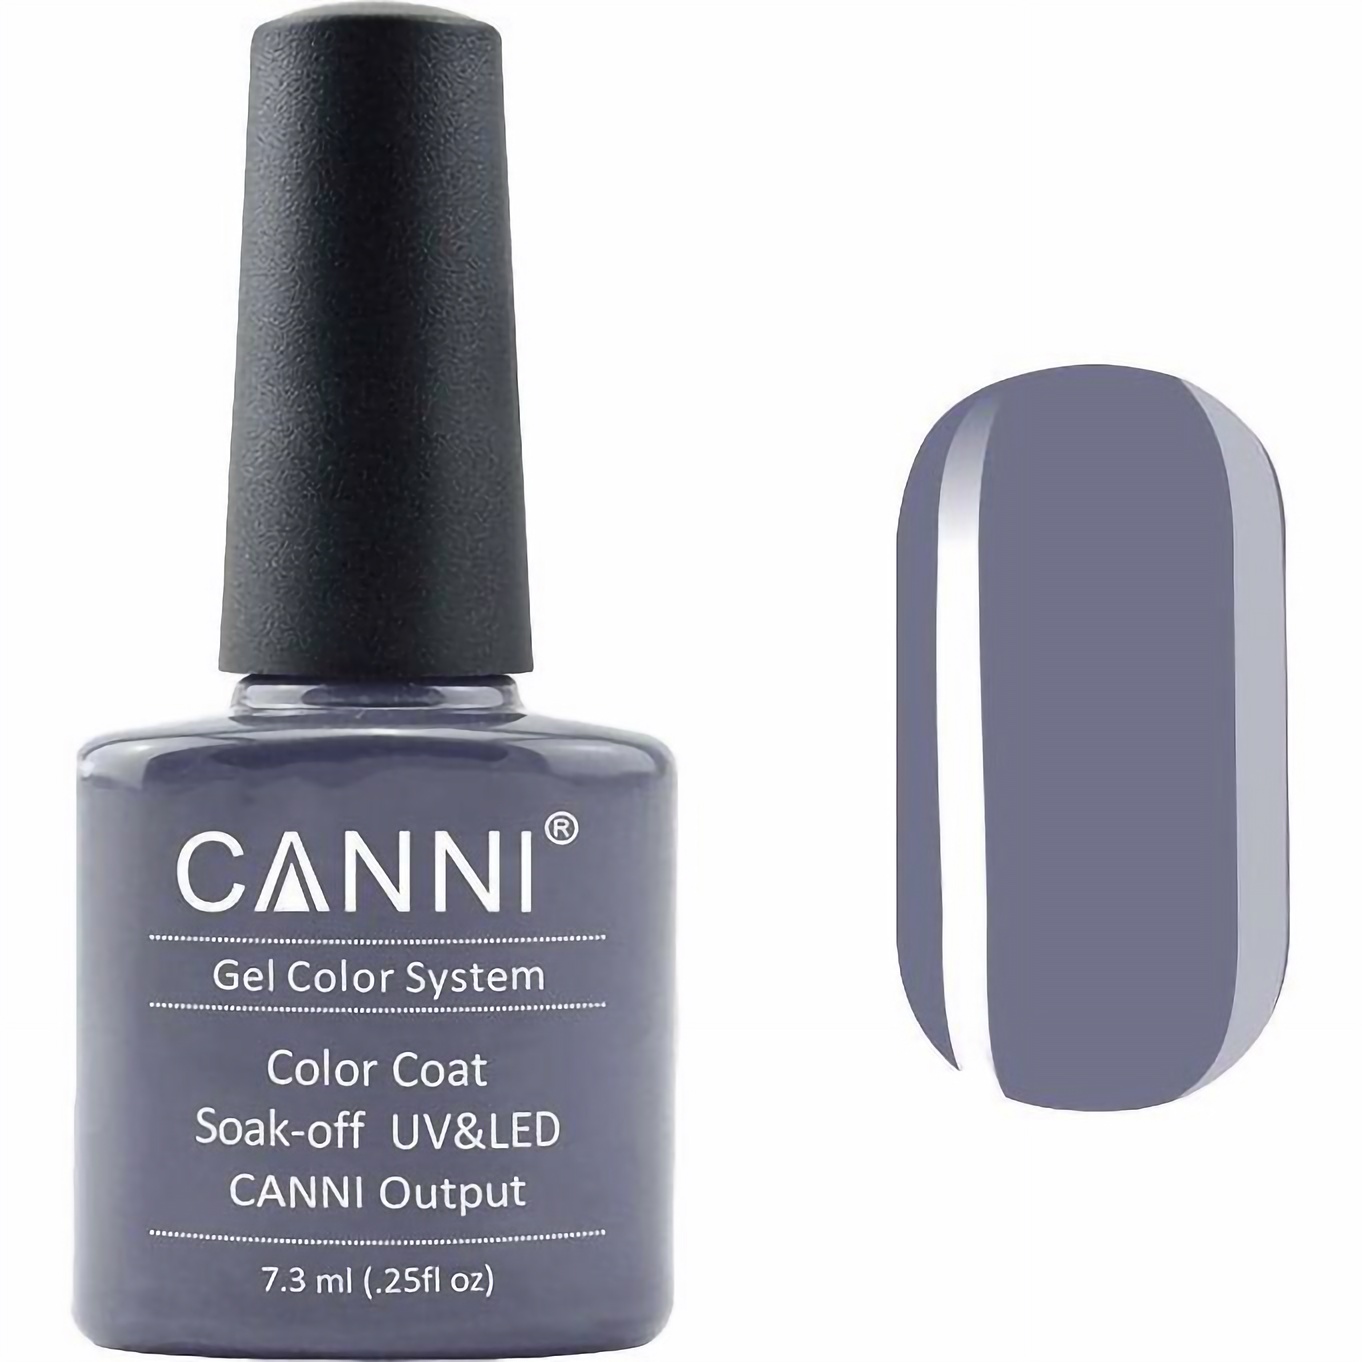 Гель-лак Canni Color Coat Soak-off UV&LED 228 светло-графитовый 7.3 мл - фото 1